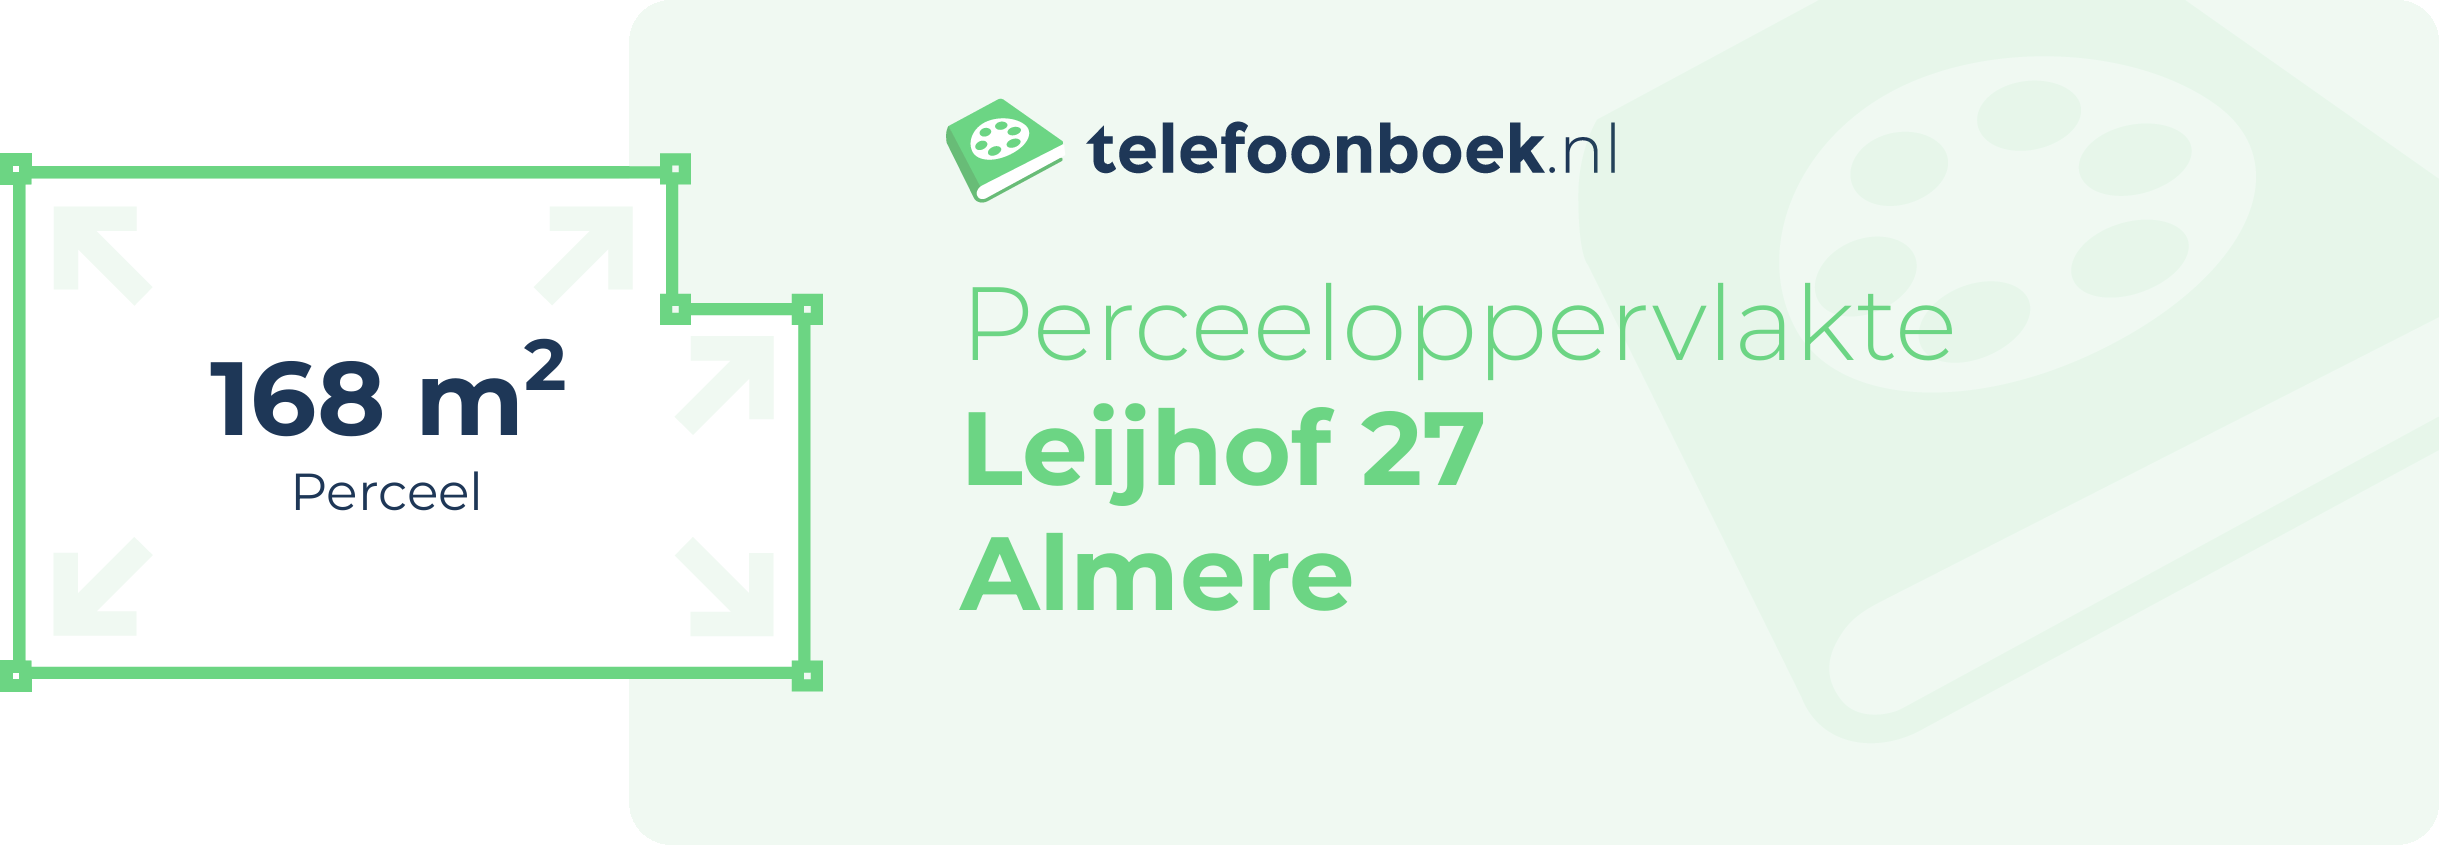 Perceeloppervlakte Leijhof 27 Almere